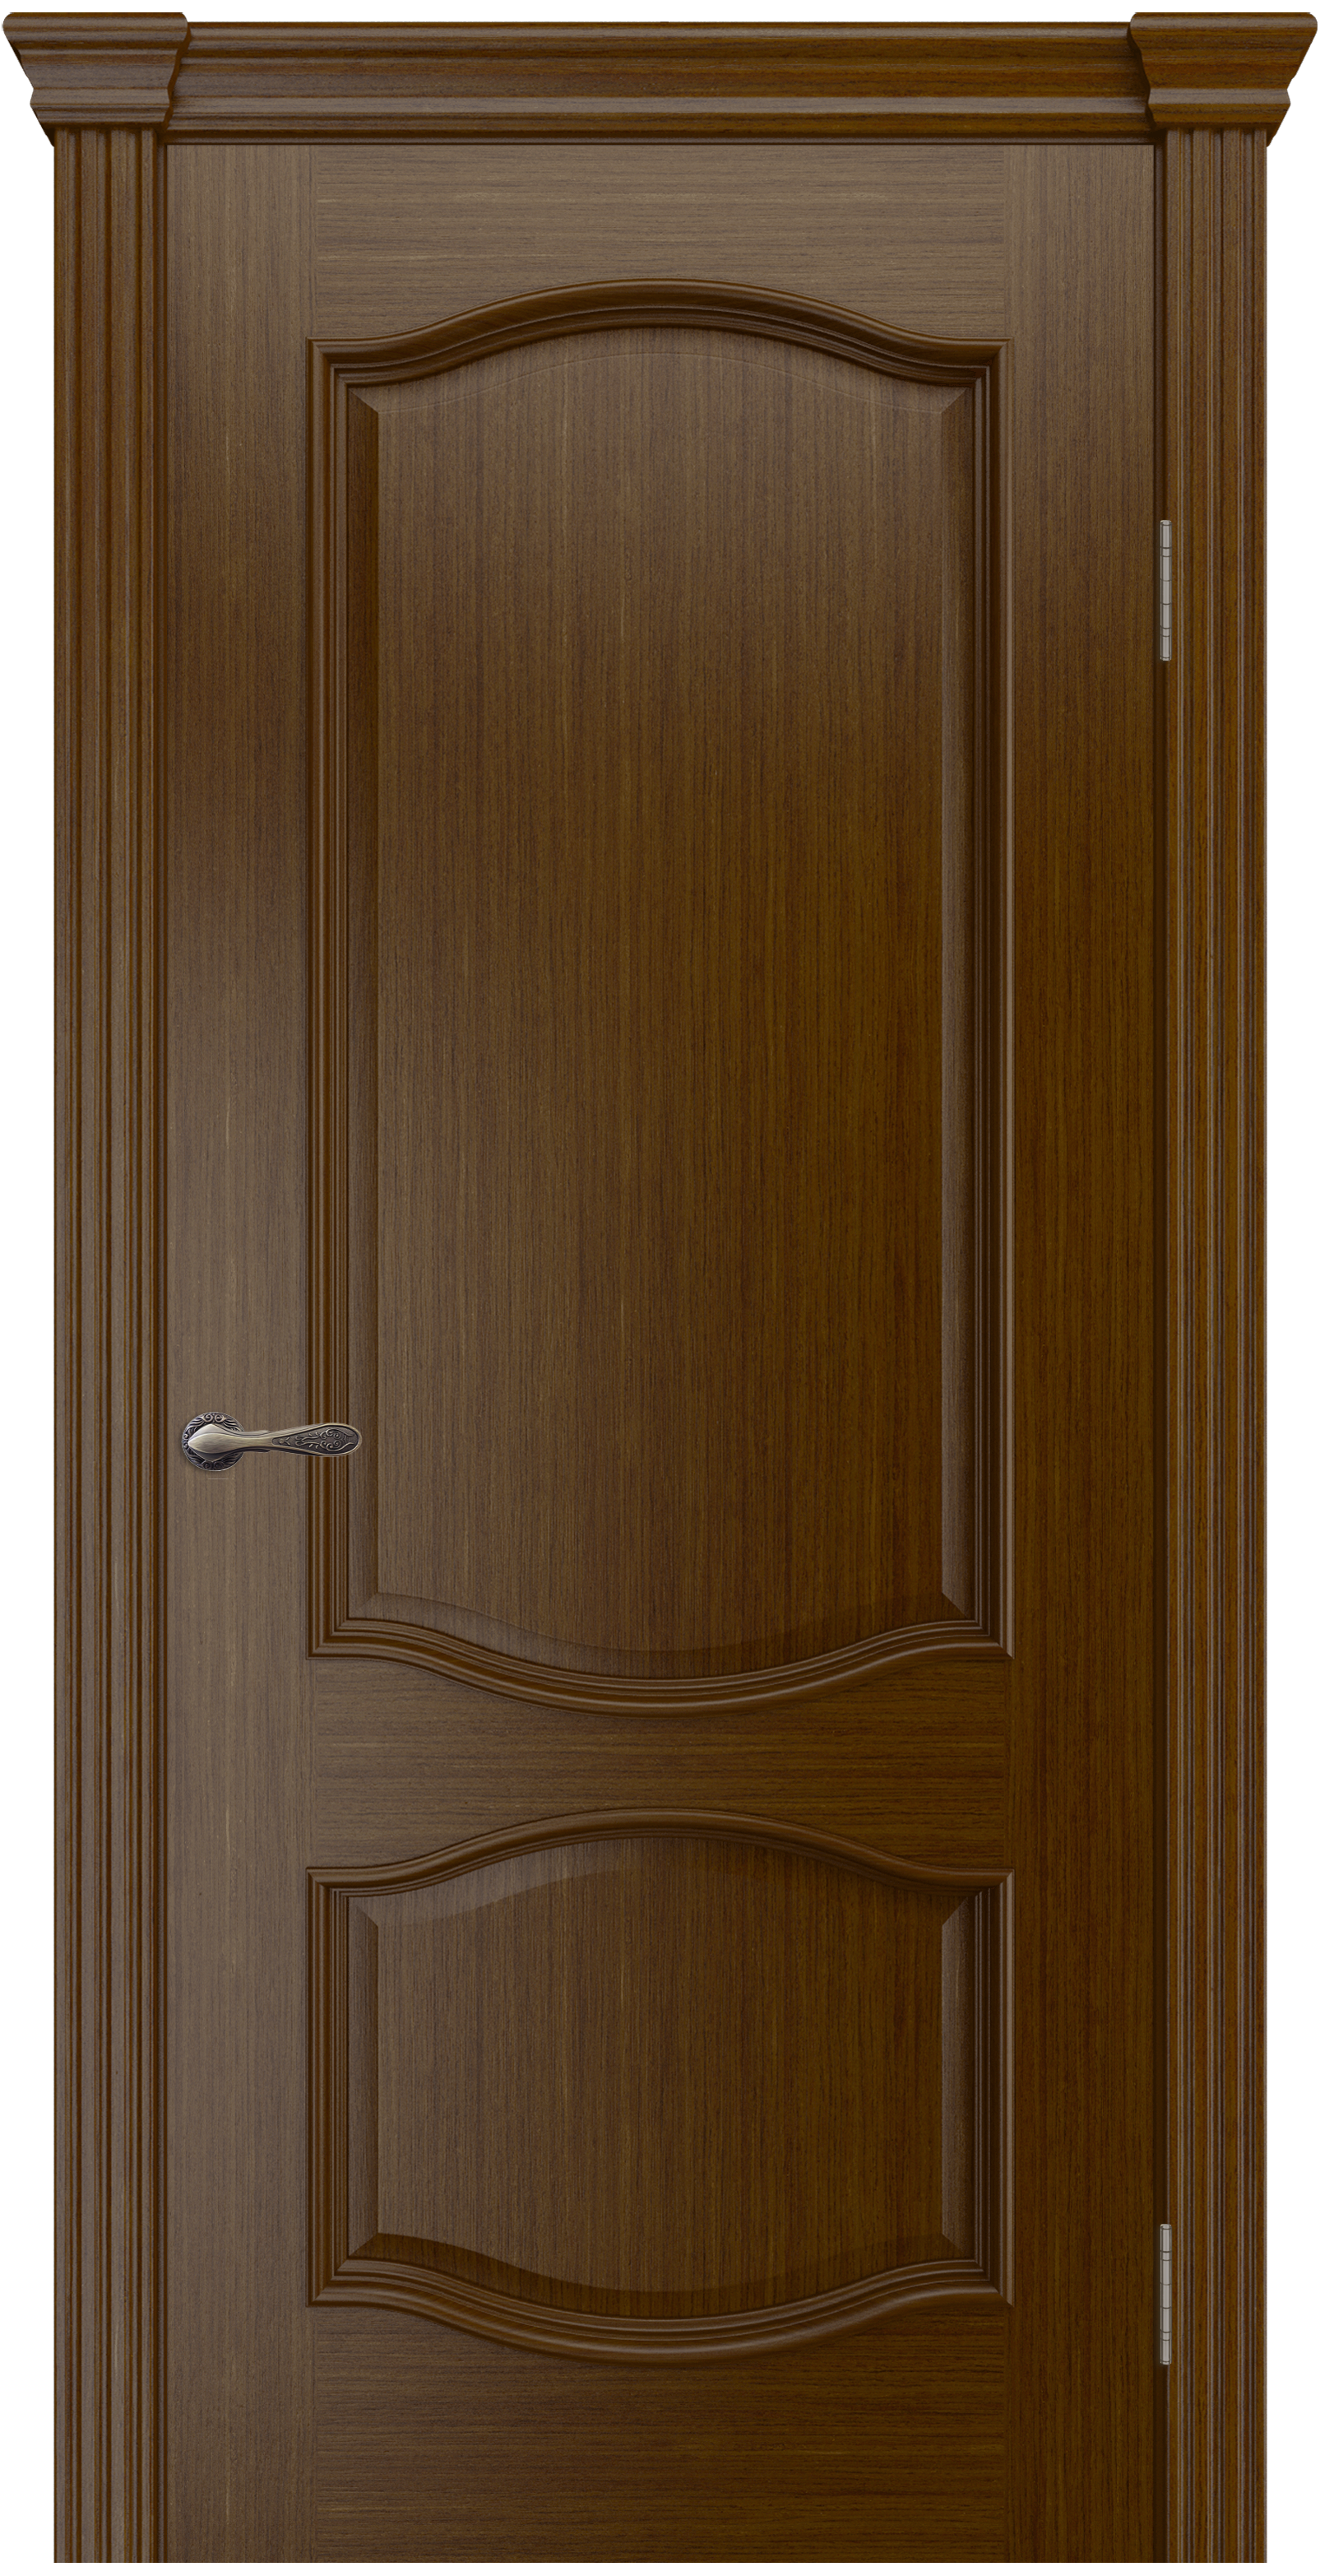 Межкомнатная дверь «София». Вид отделки  Cтандартный наличник